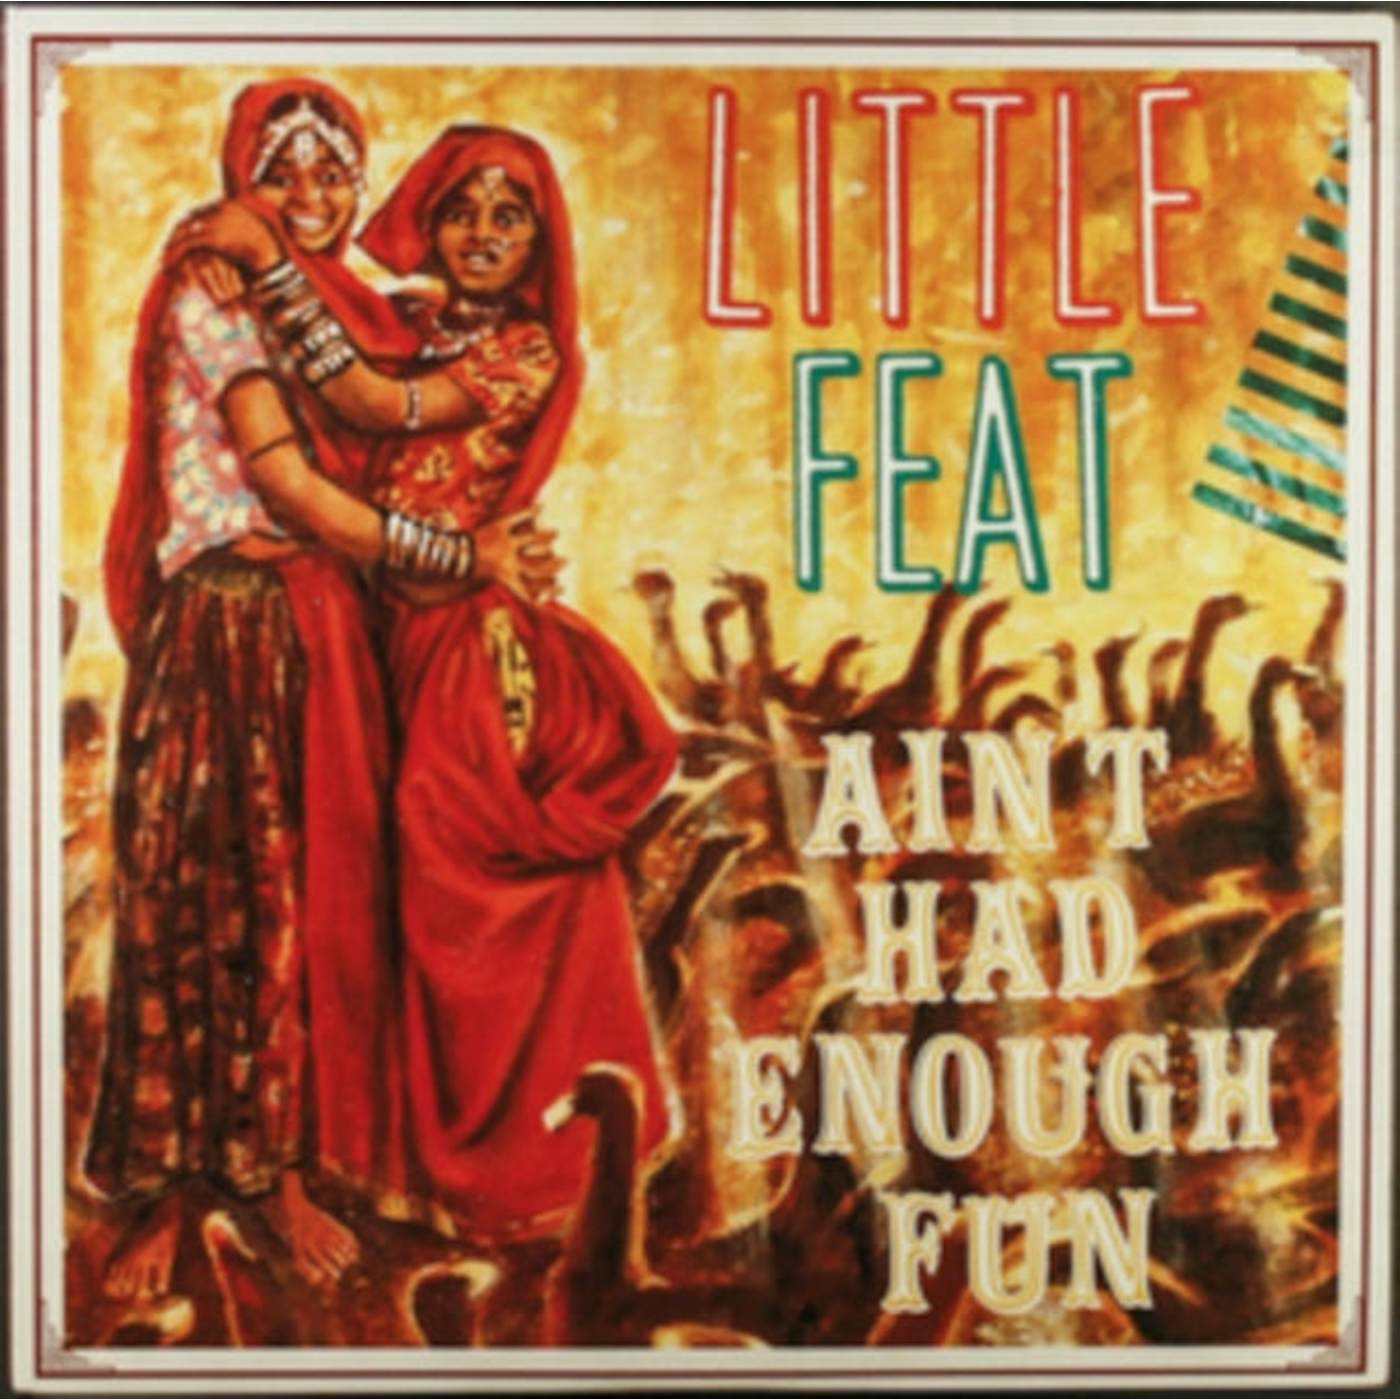 Little Feat CD - Ain't Had Enough Fun